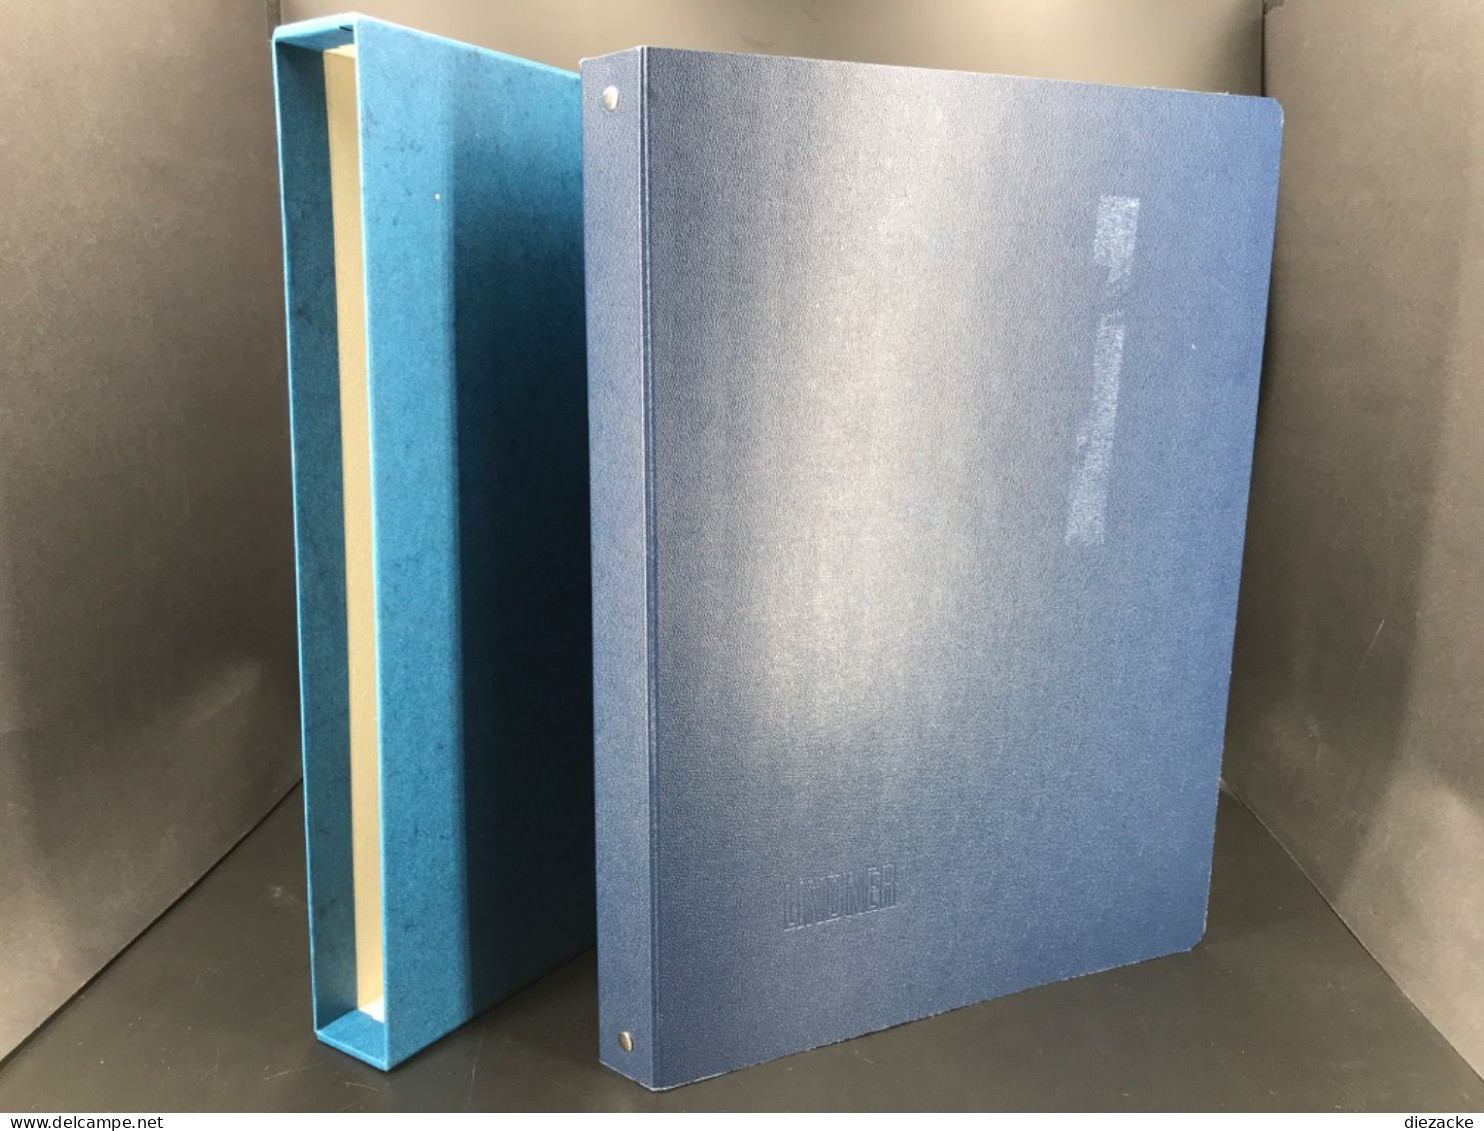 Lindner Bogenalbum Blau Für Bis Zu 100 Bögen Inkl. Schutzkassette Neuwertig (7973 - Alben Für Komplette Bögen